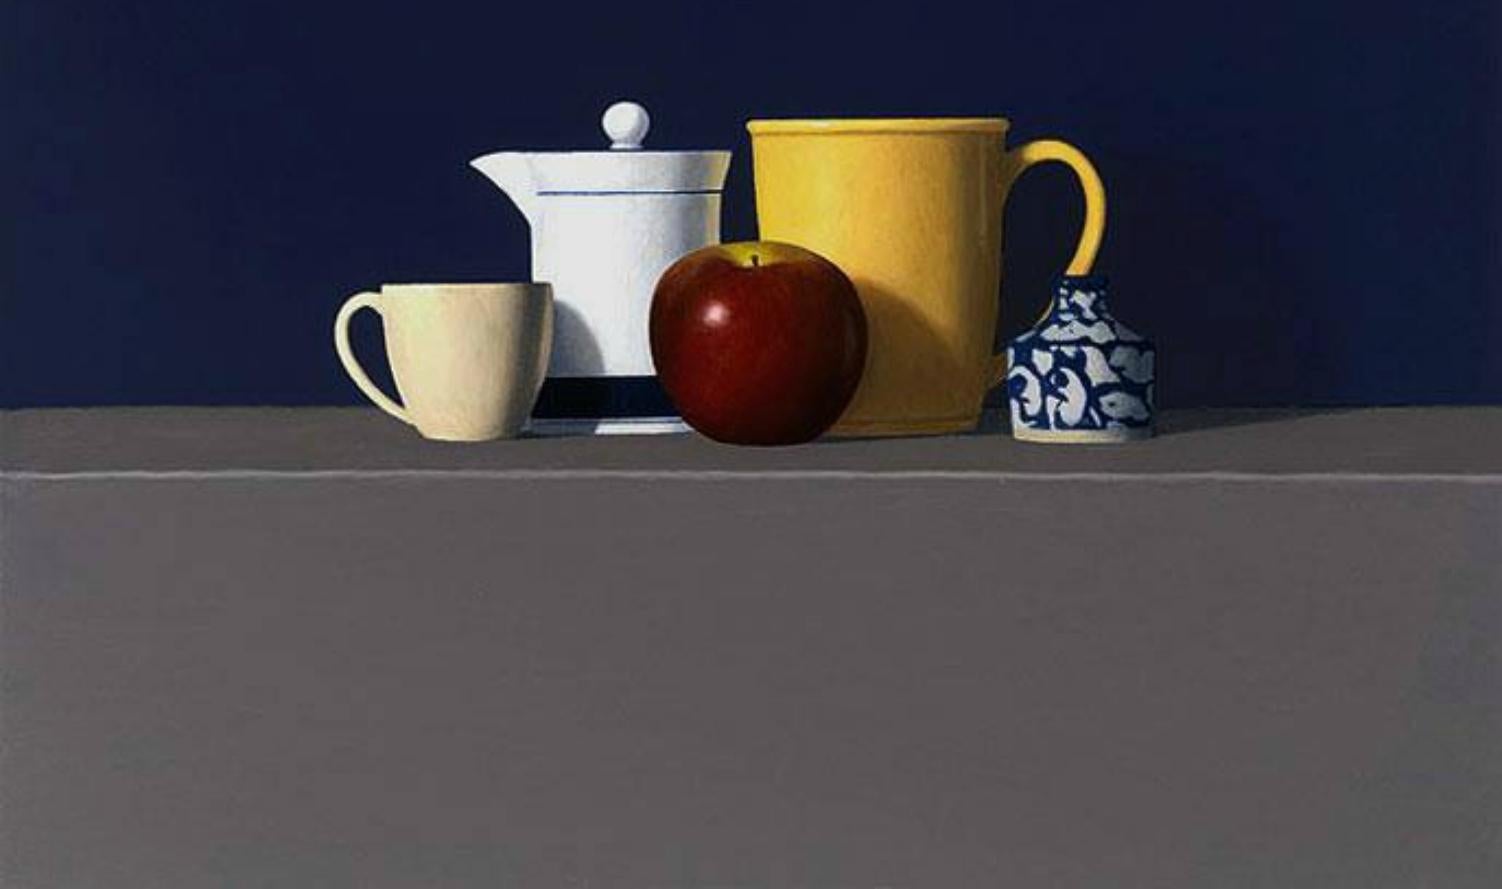  Pomme rouge avec quatre objets, huile, réalisme américain, 36 x 36, expédition réduite - Réalisme Painting par David Harrison